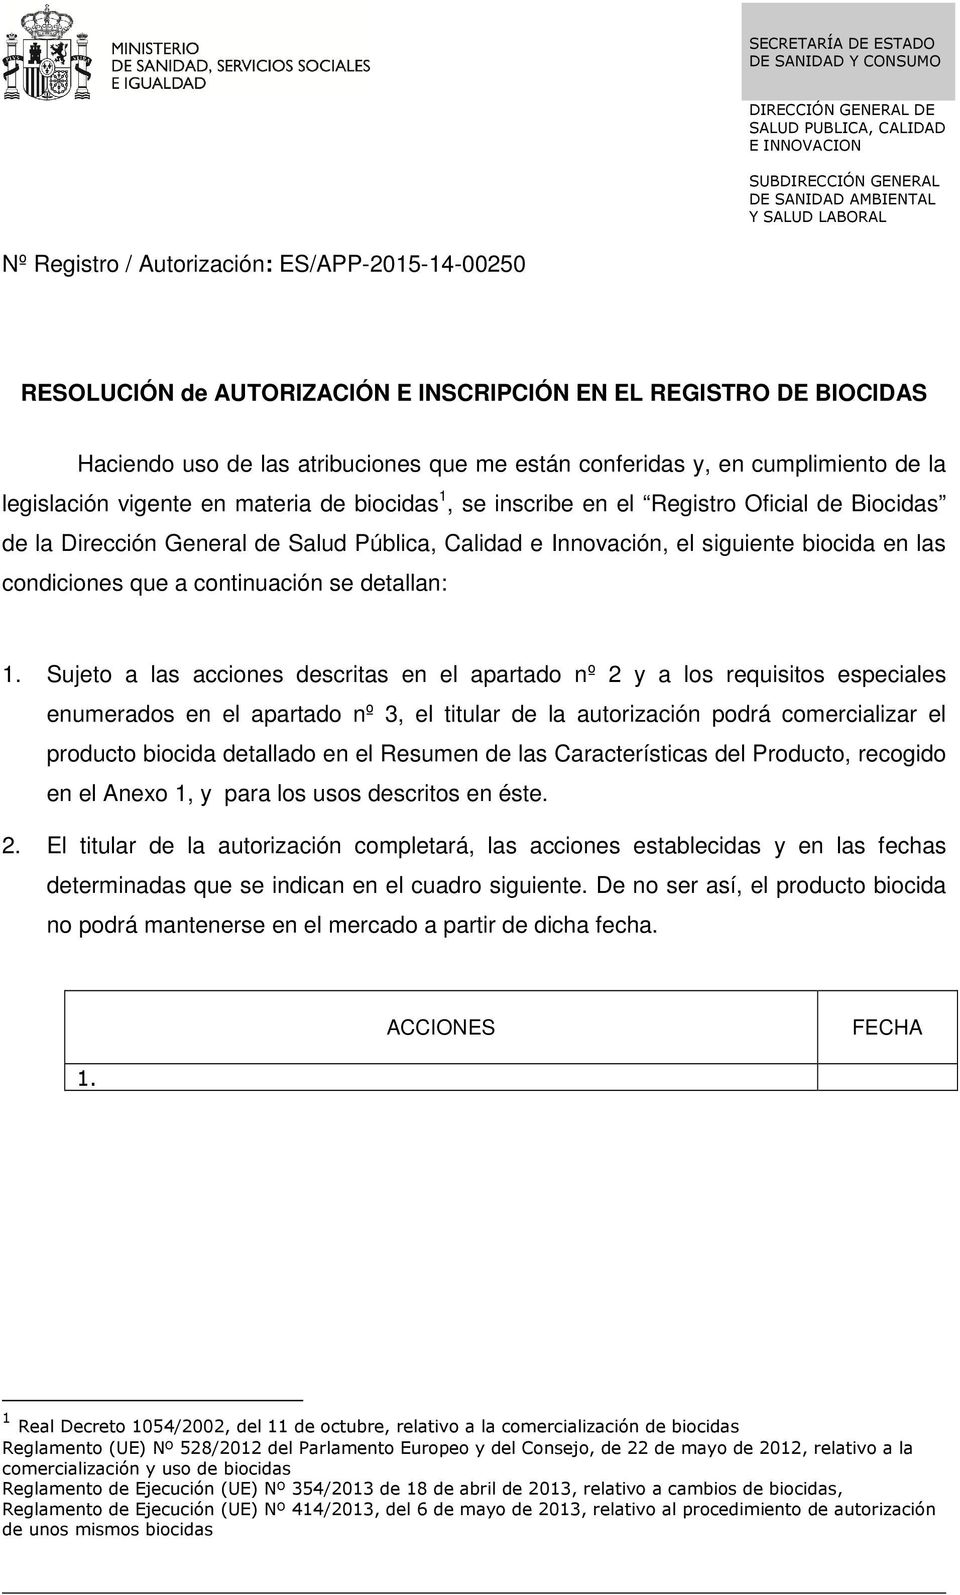 Sujeto a las acciones descritas en el apartado nº 2 y a los requisitos especiales enumerados en el apartado nº 3, el titular de la autorización podrá comercializar el producto biocida detallado en el